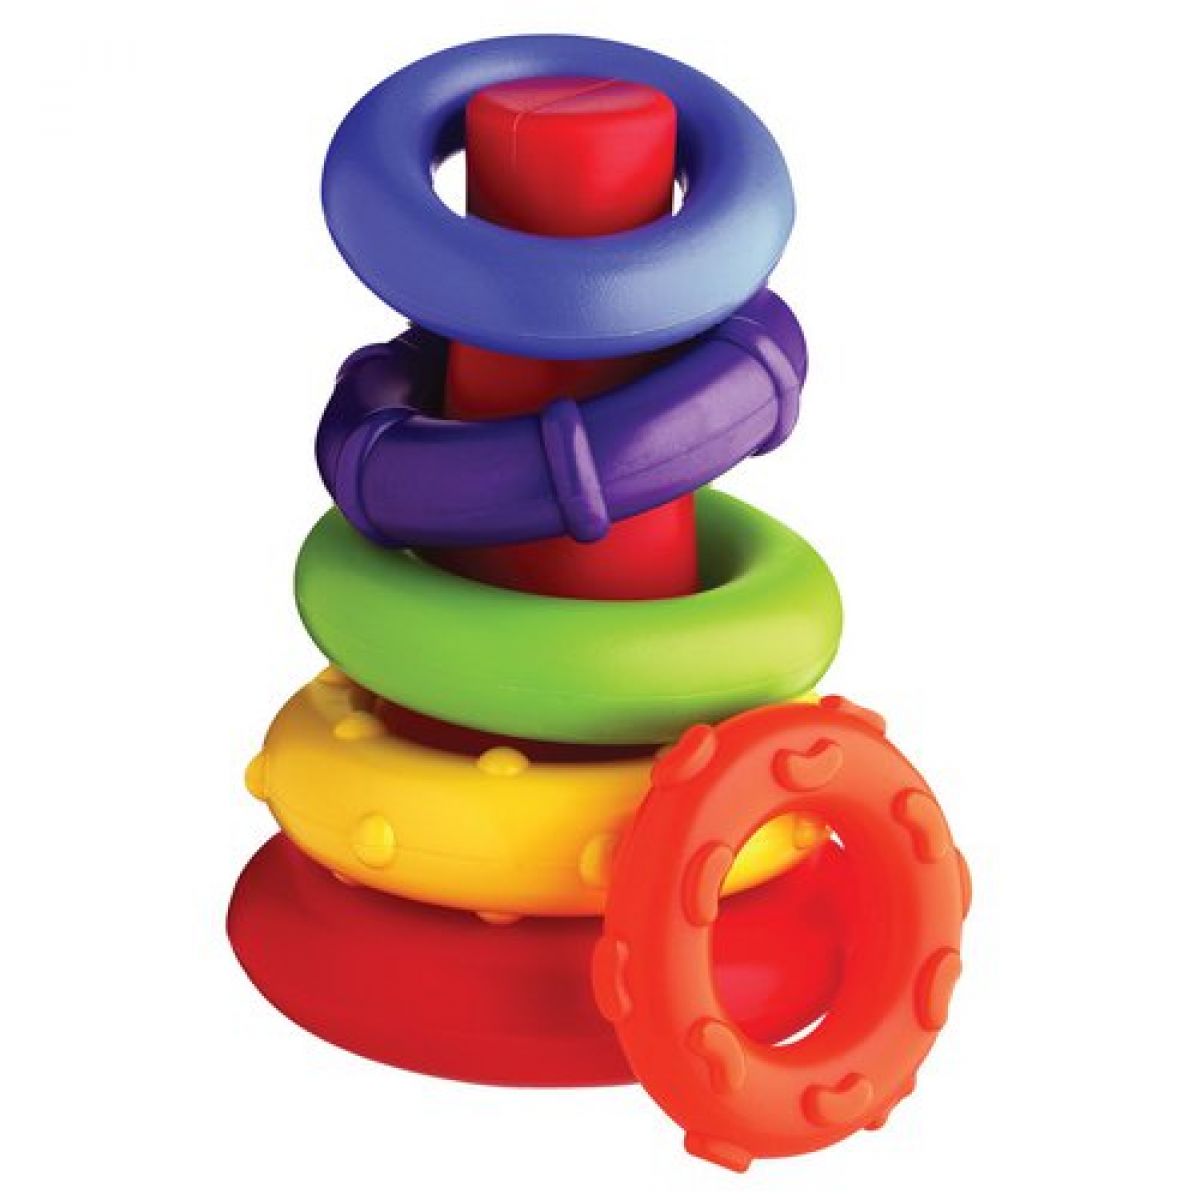 Playgro Plastové navlékací kroužky